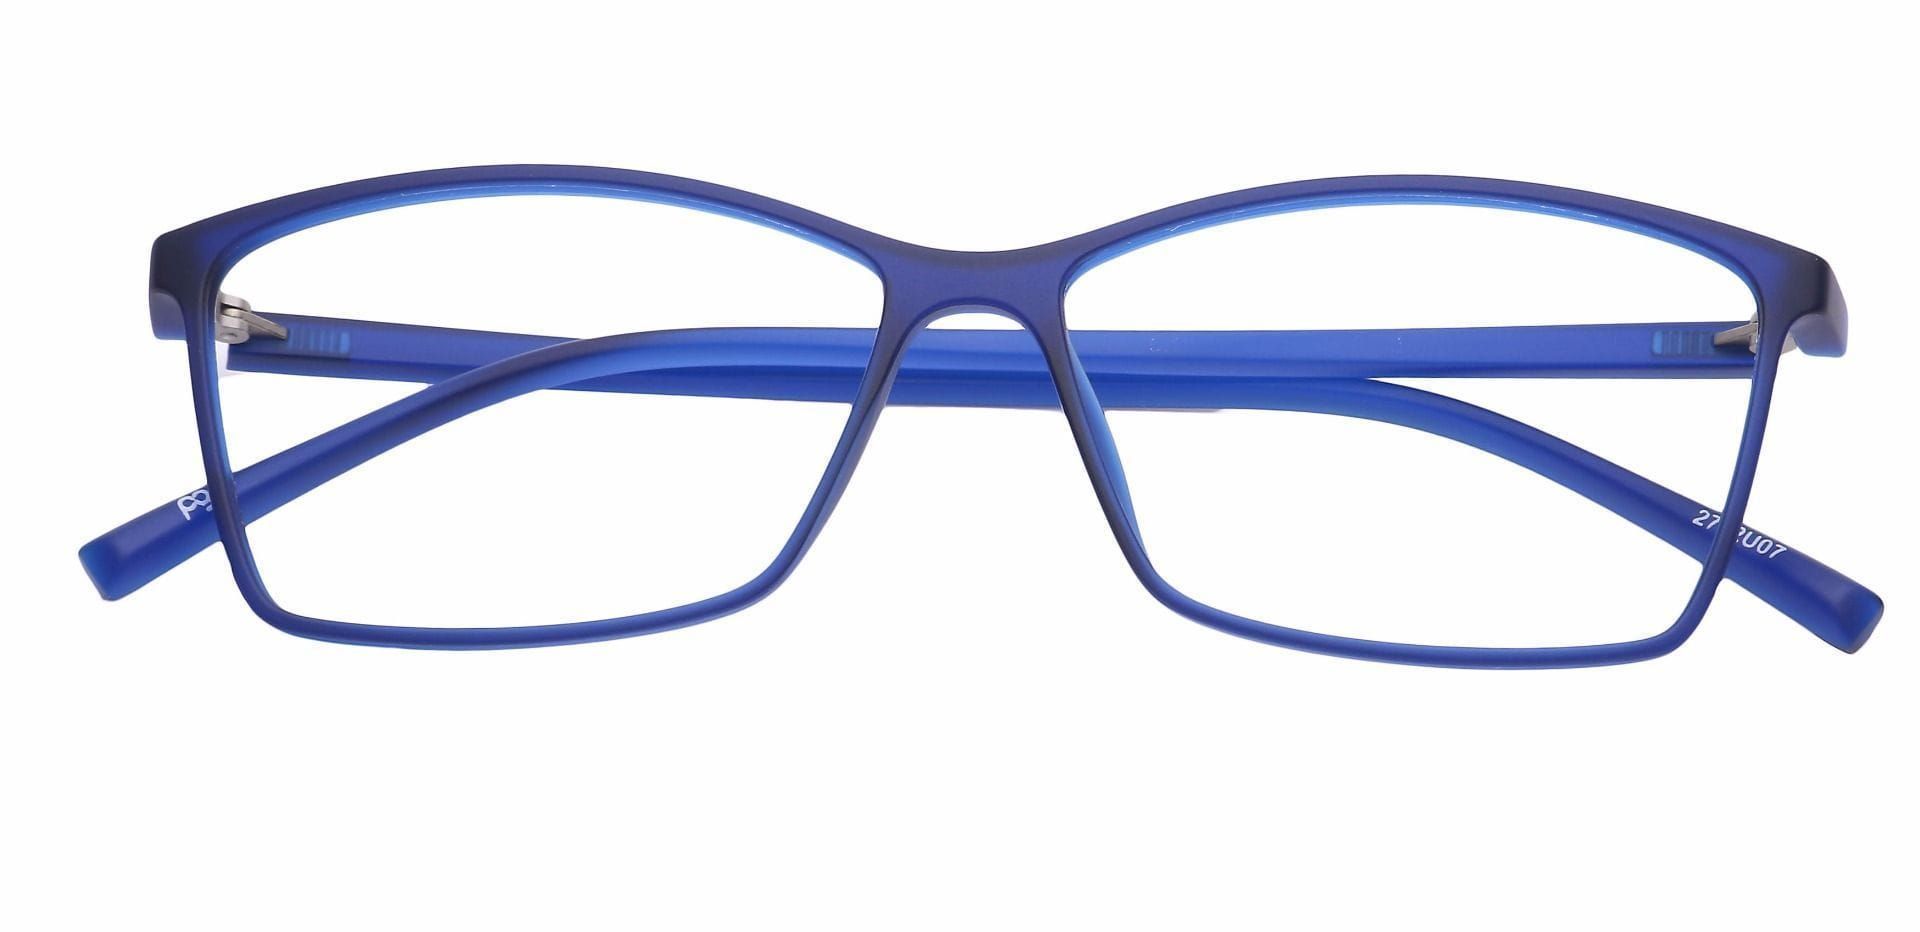 Align Rectangle Non-Rx Glasses - Blue